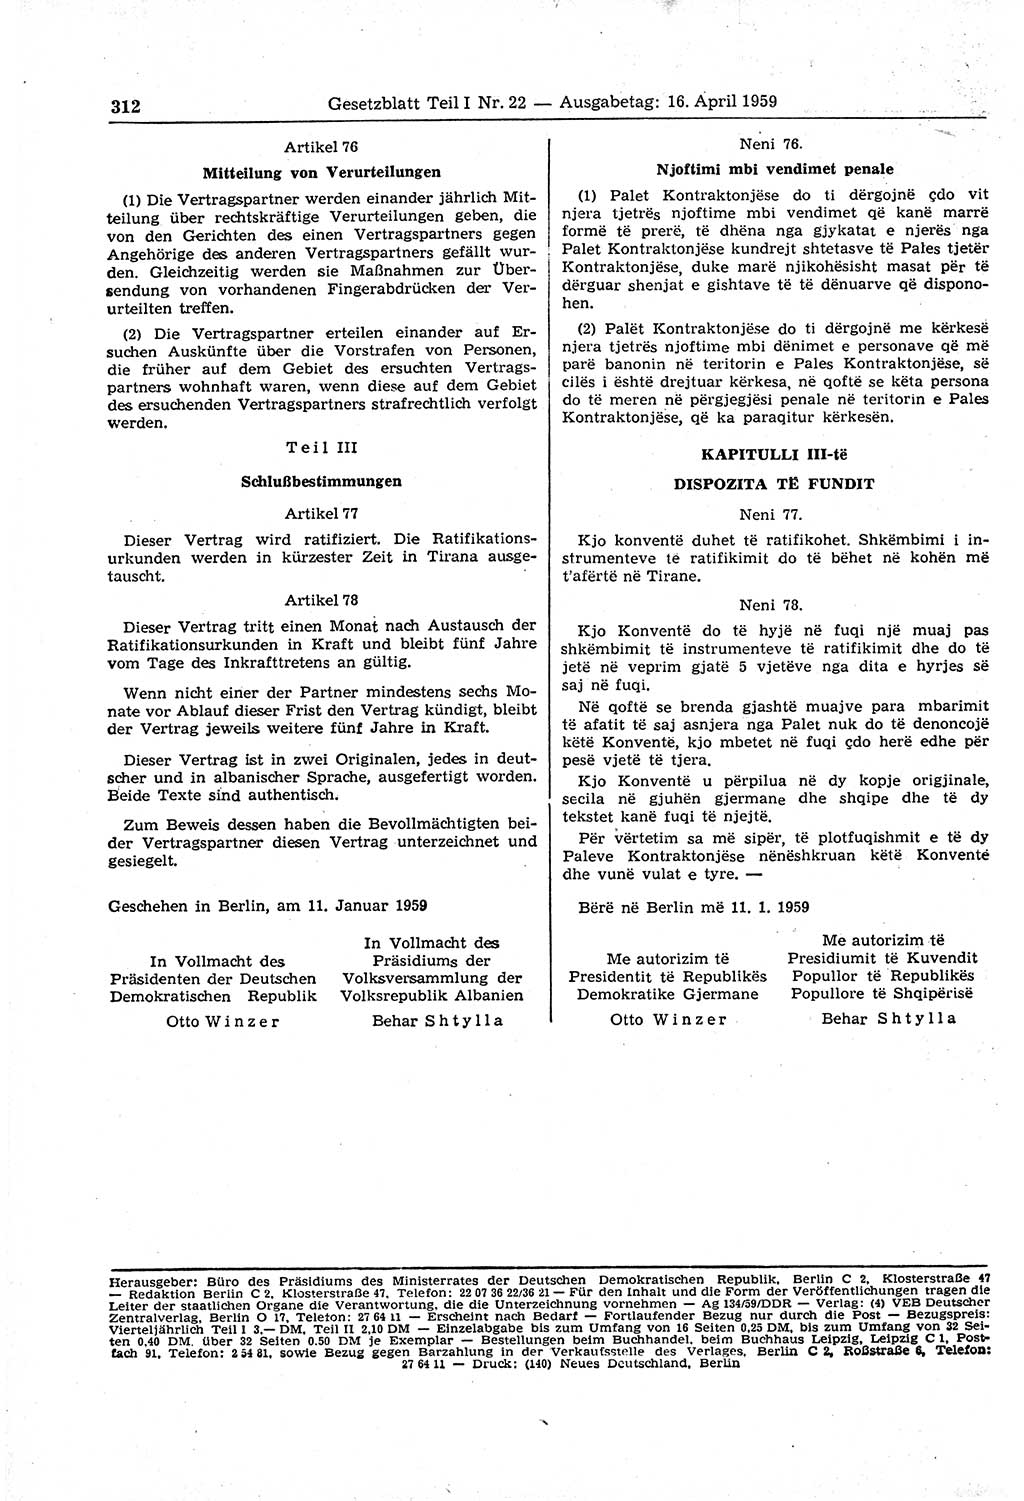 Gesetzblatt (GBl.) der Deutschen Demokratischen Republik (DDR) Teil Ⅰ 1959, Seite 312 (GBl. DDR Ⅰ 1959, S. 312)